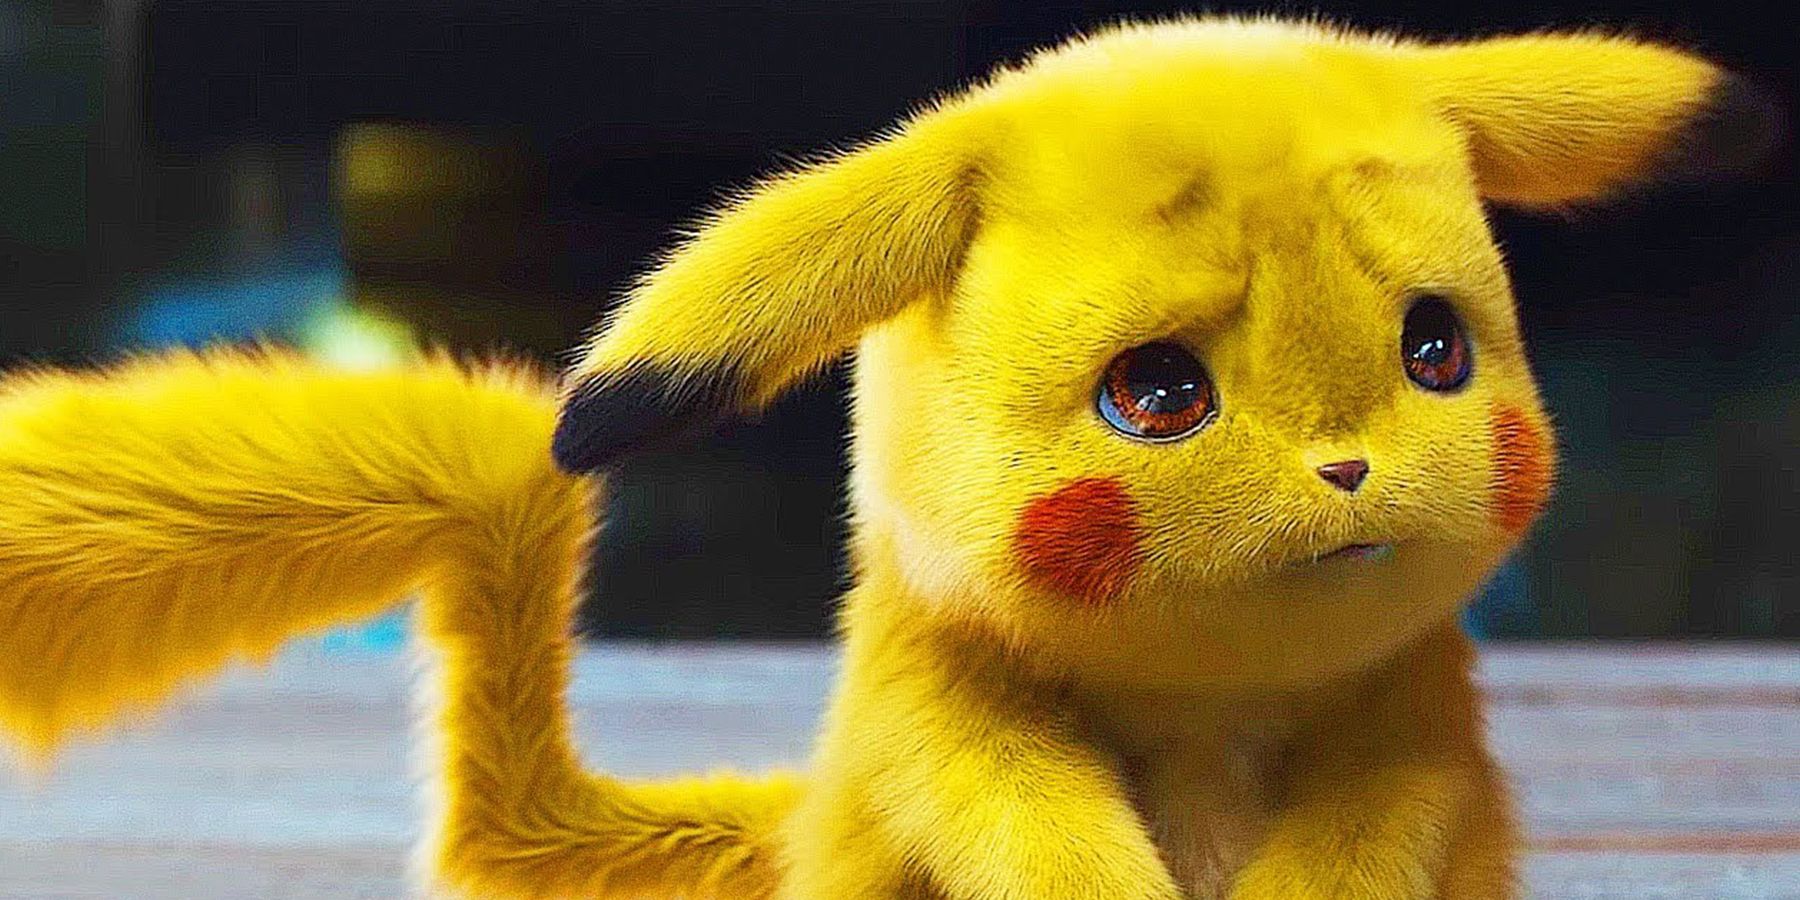 Defending Detective Pikachus Controversial Pokémon Designs